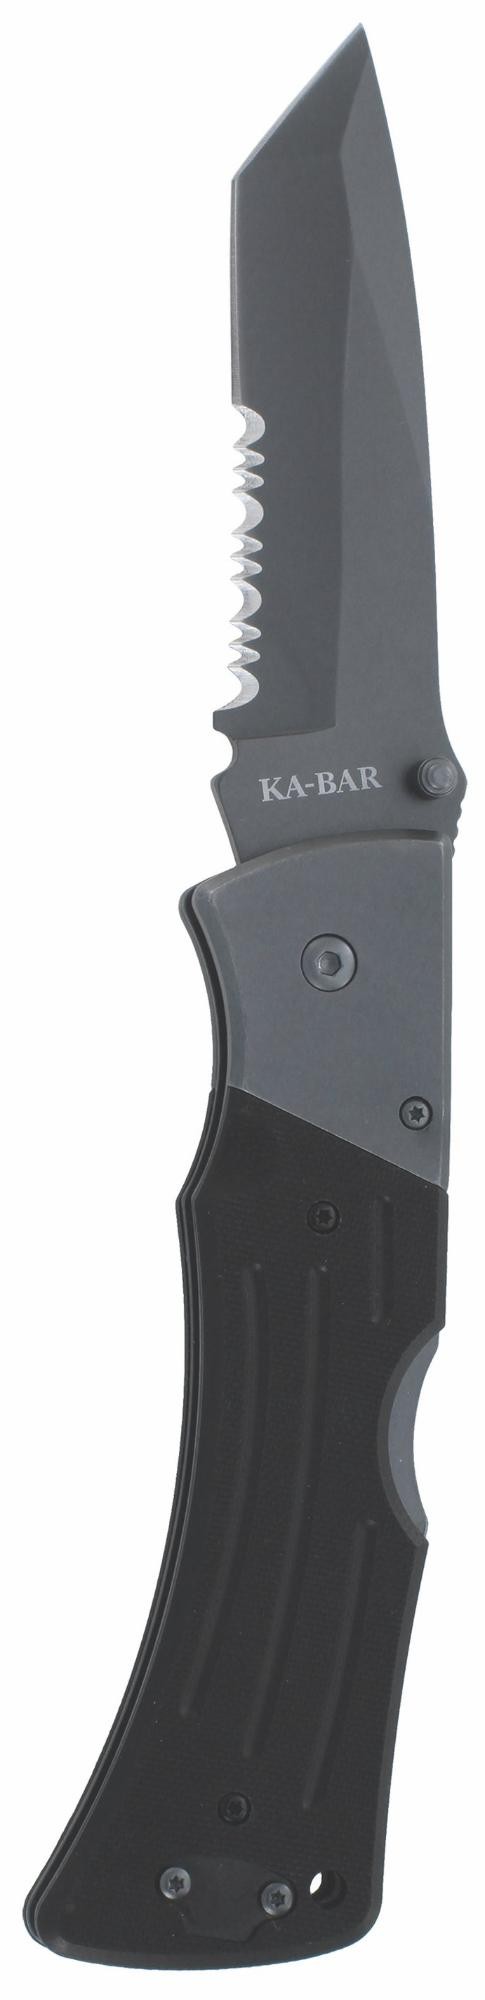 KA-BAR® G10 Mule Tanto - Folding Knife with Serrated Blade (3063)